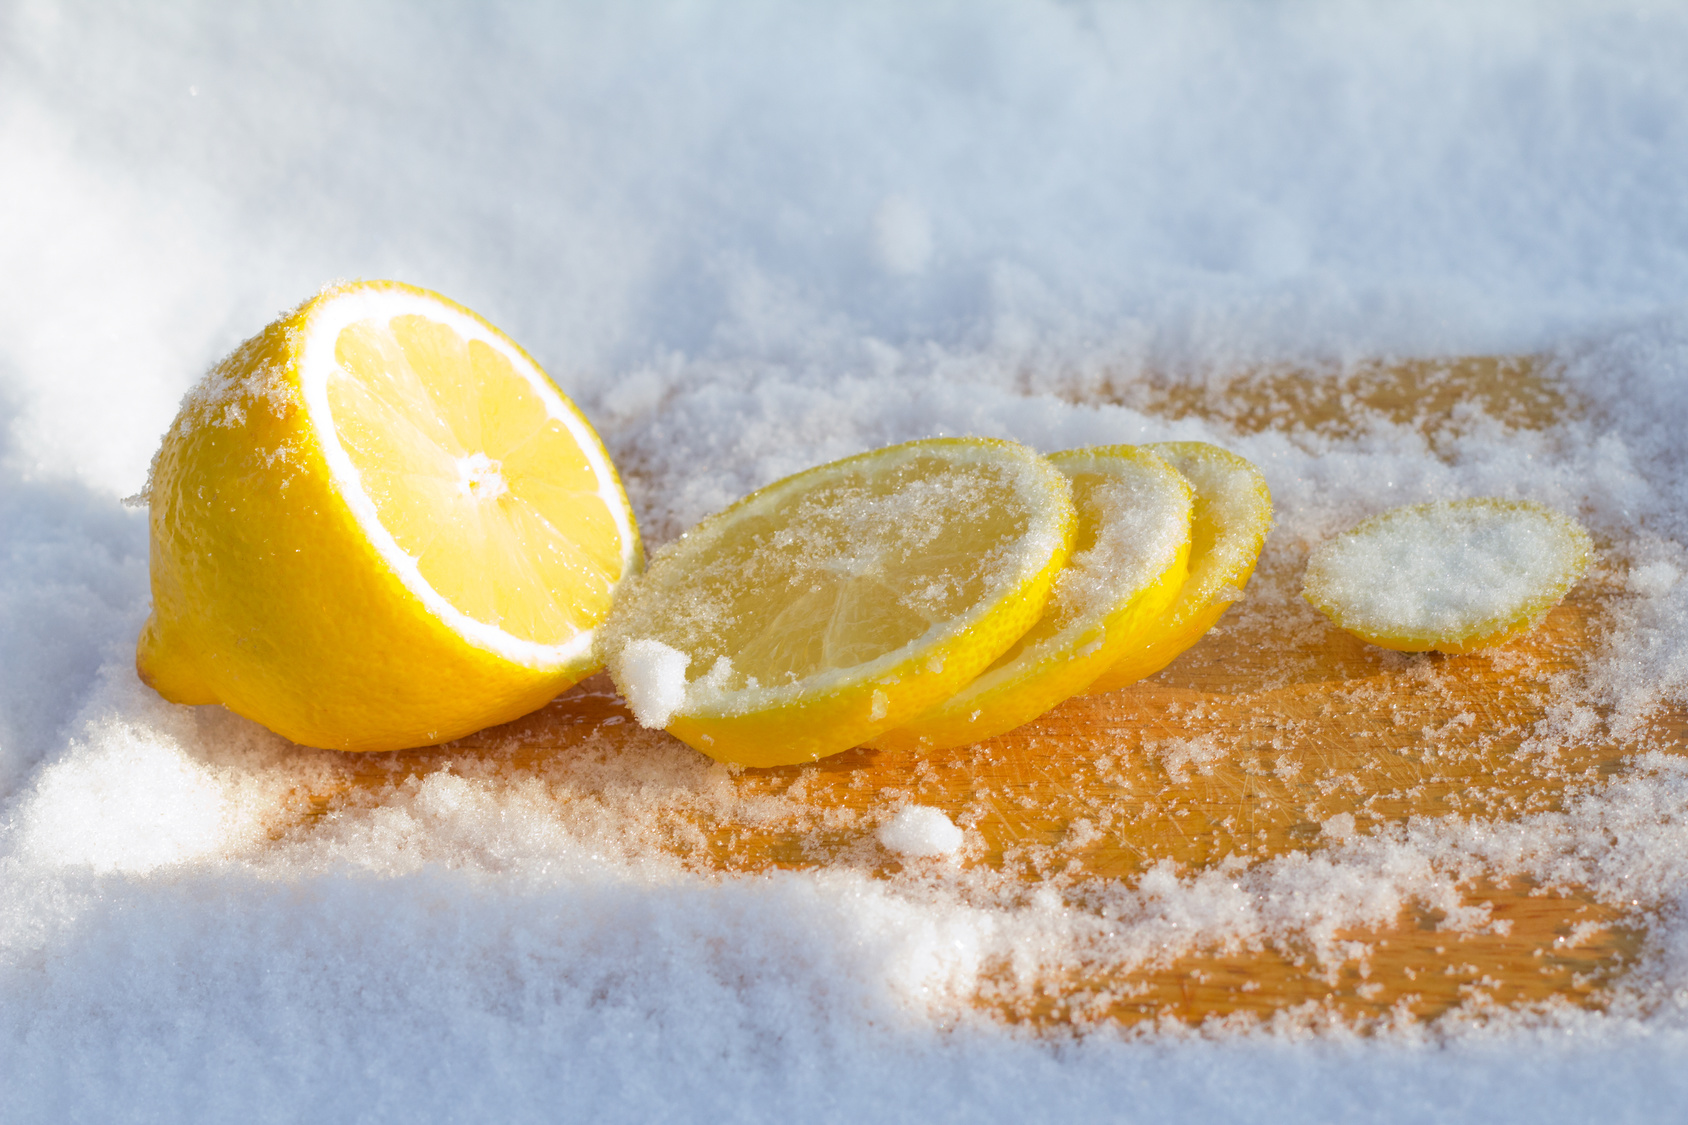 The cooled lemon among ice close up